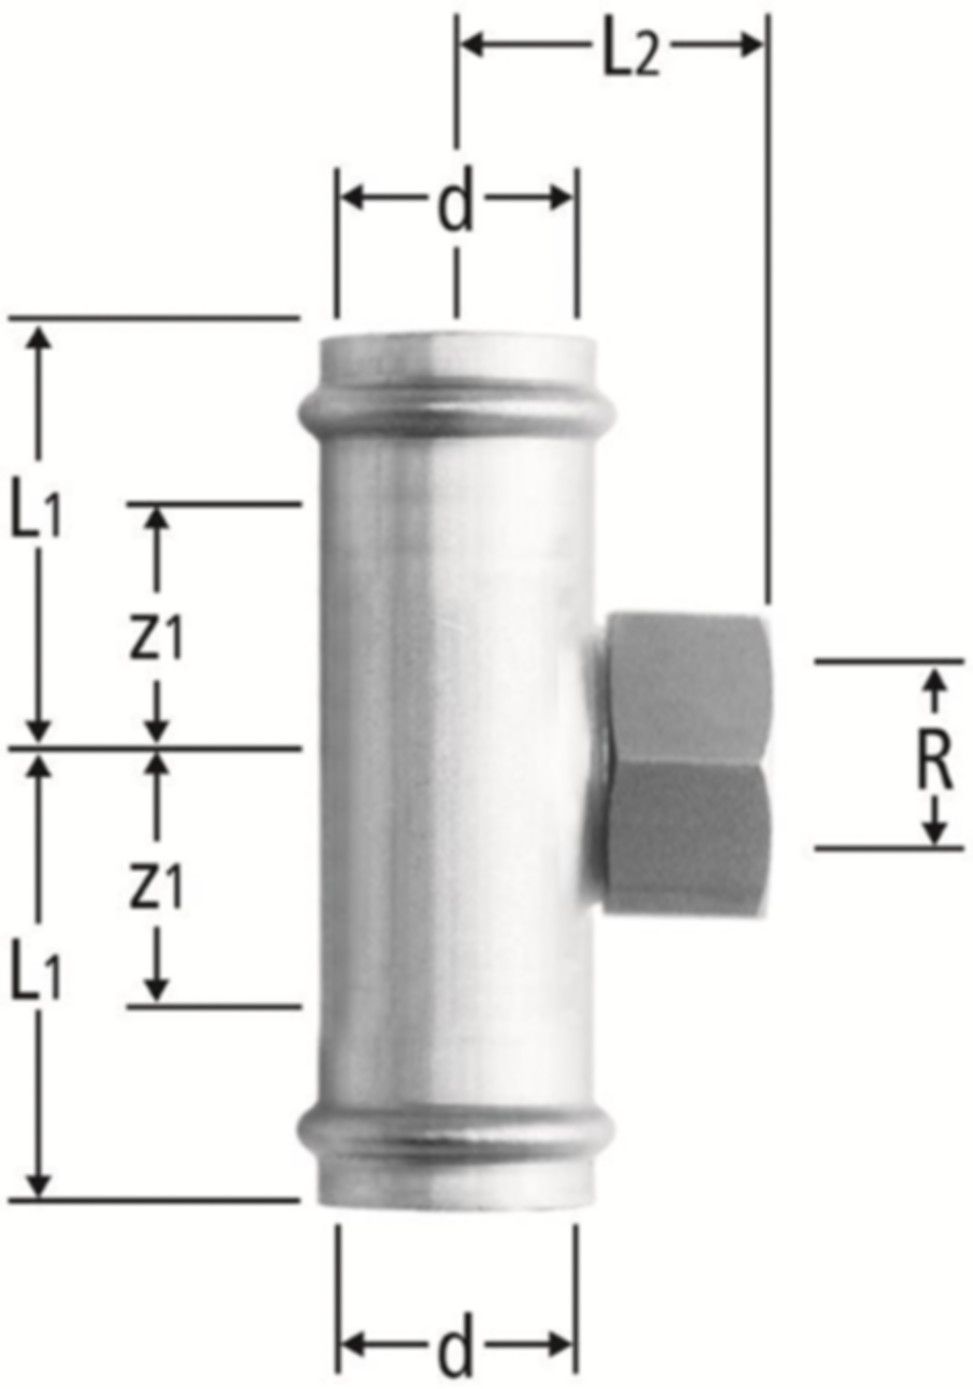 T-Stück m/IG 28 x 1" x 28 mm 80019.25 mit Schiebemuffe - Nussbaum-Optipress-Inox-Fittings